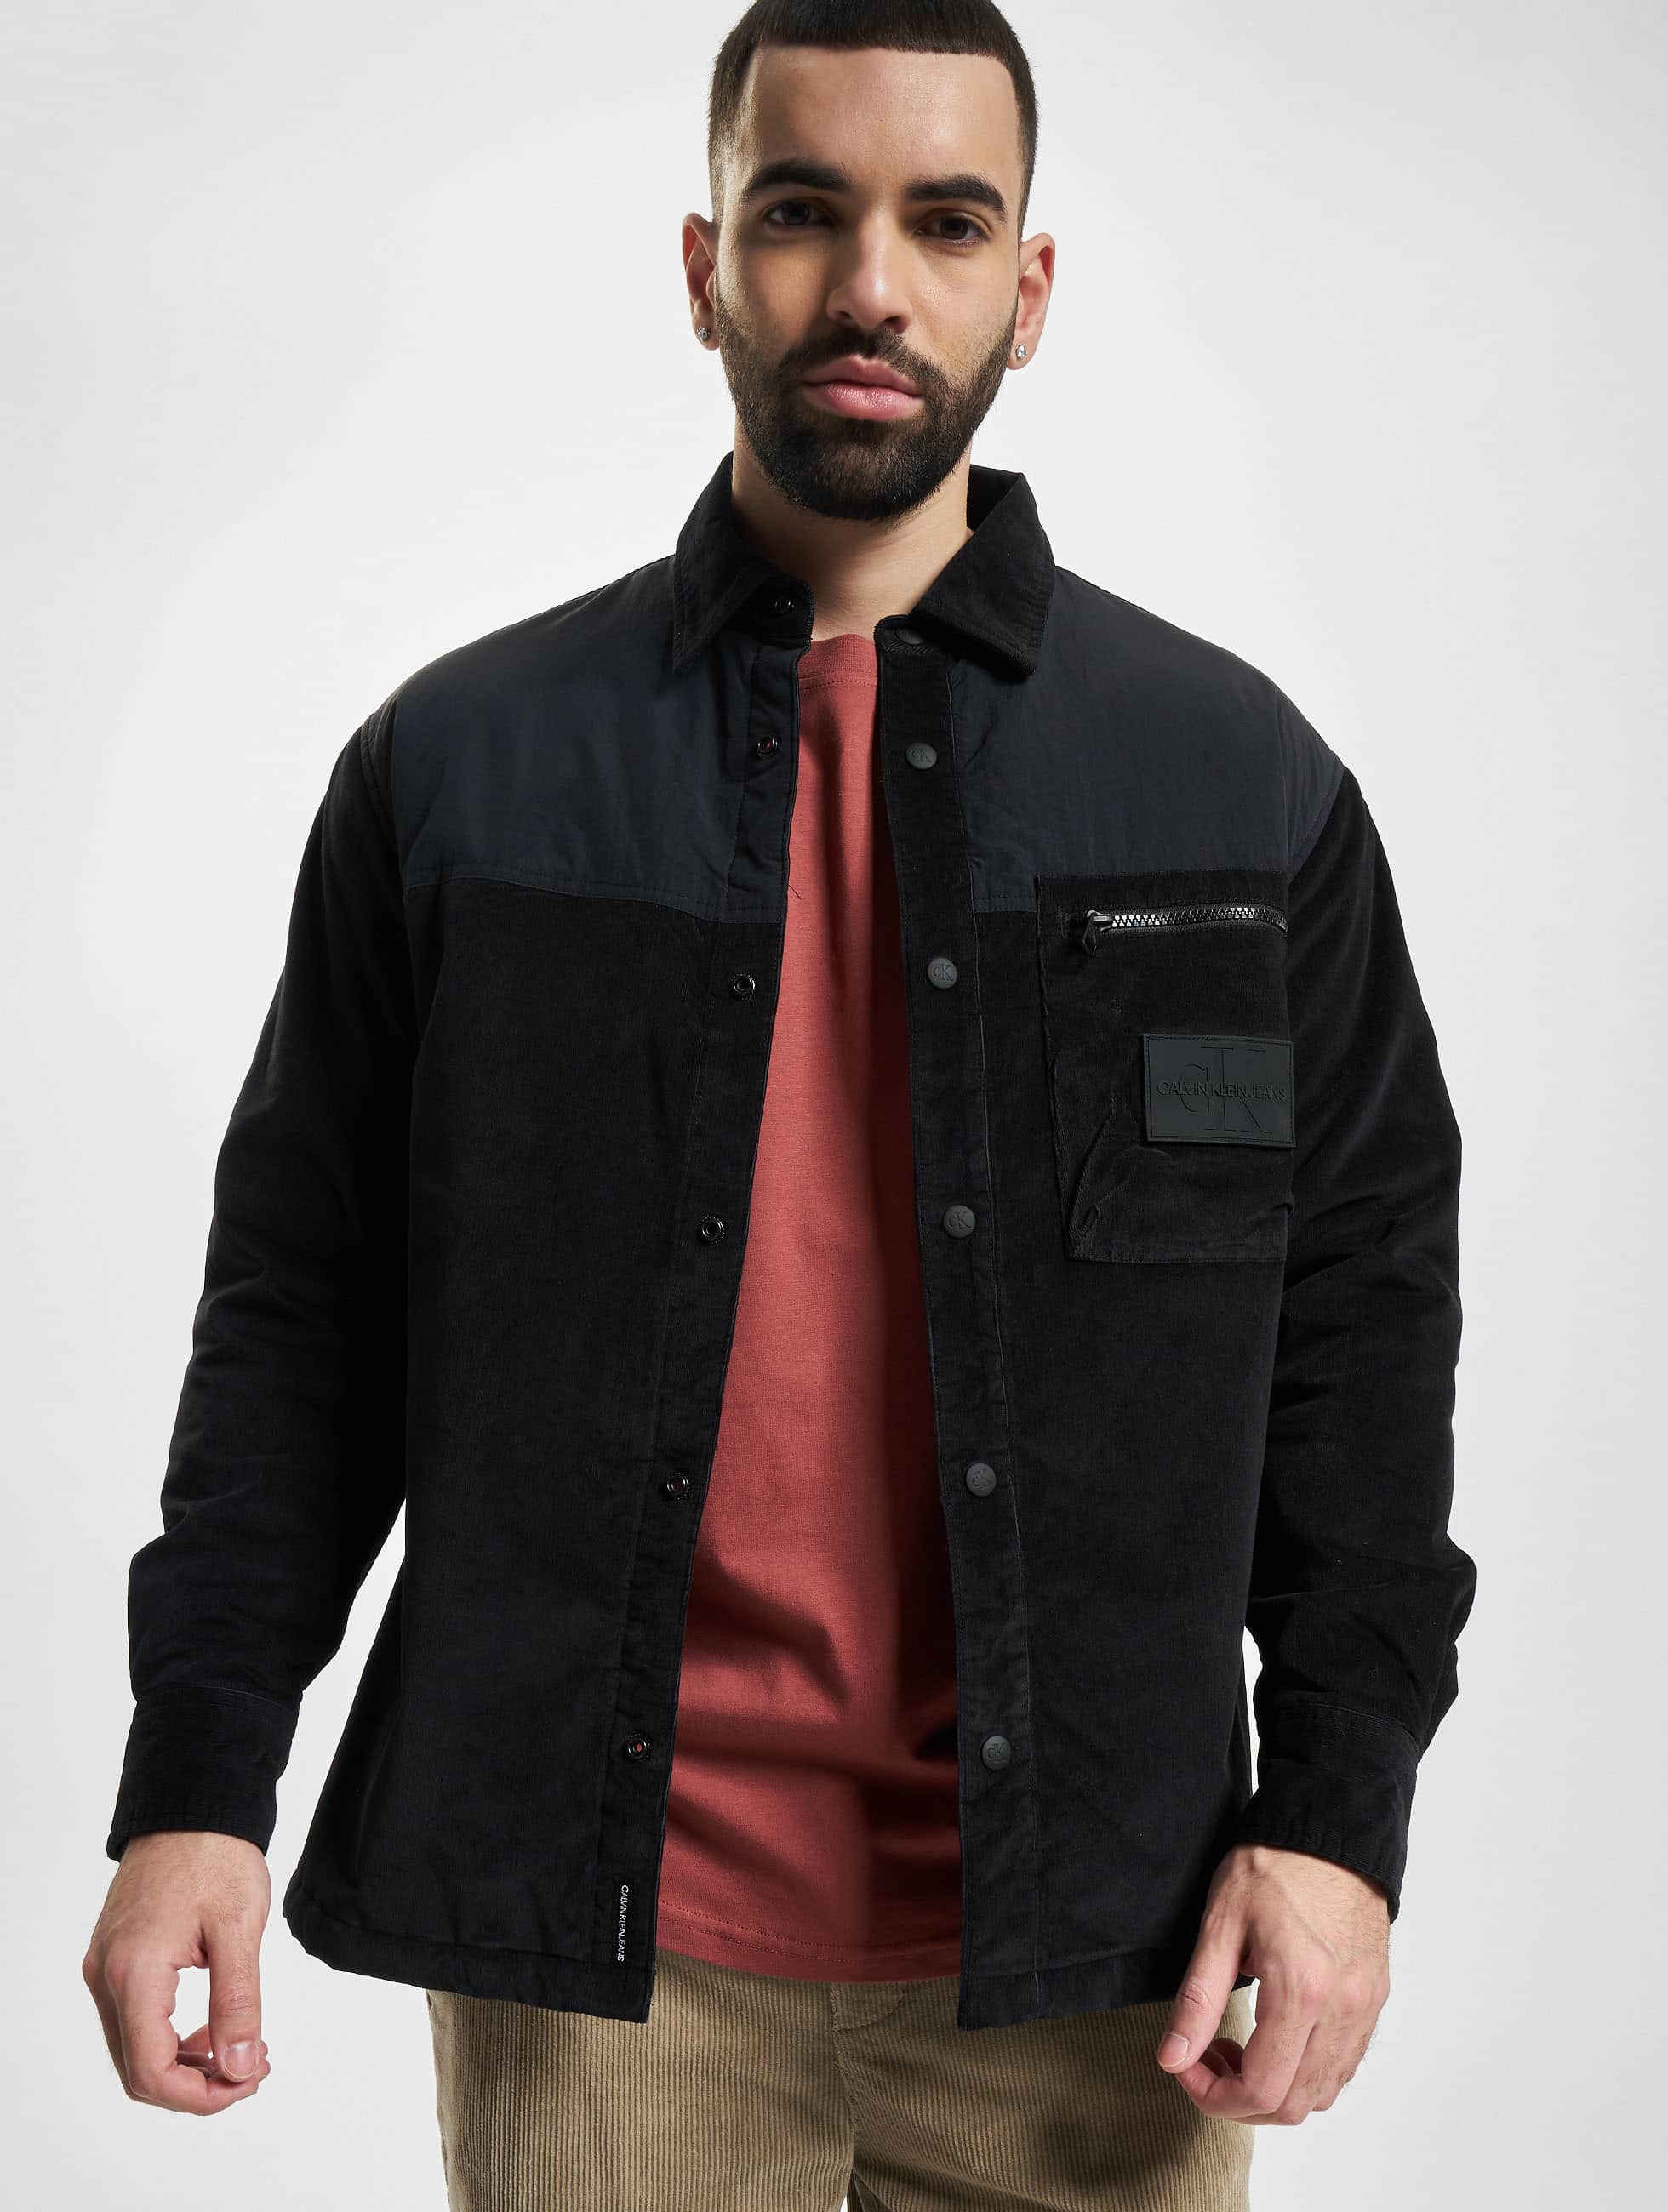 Calvin Klein Overwear / Shirt Corduroy in black 971131